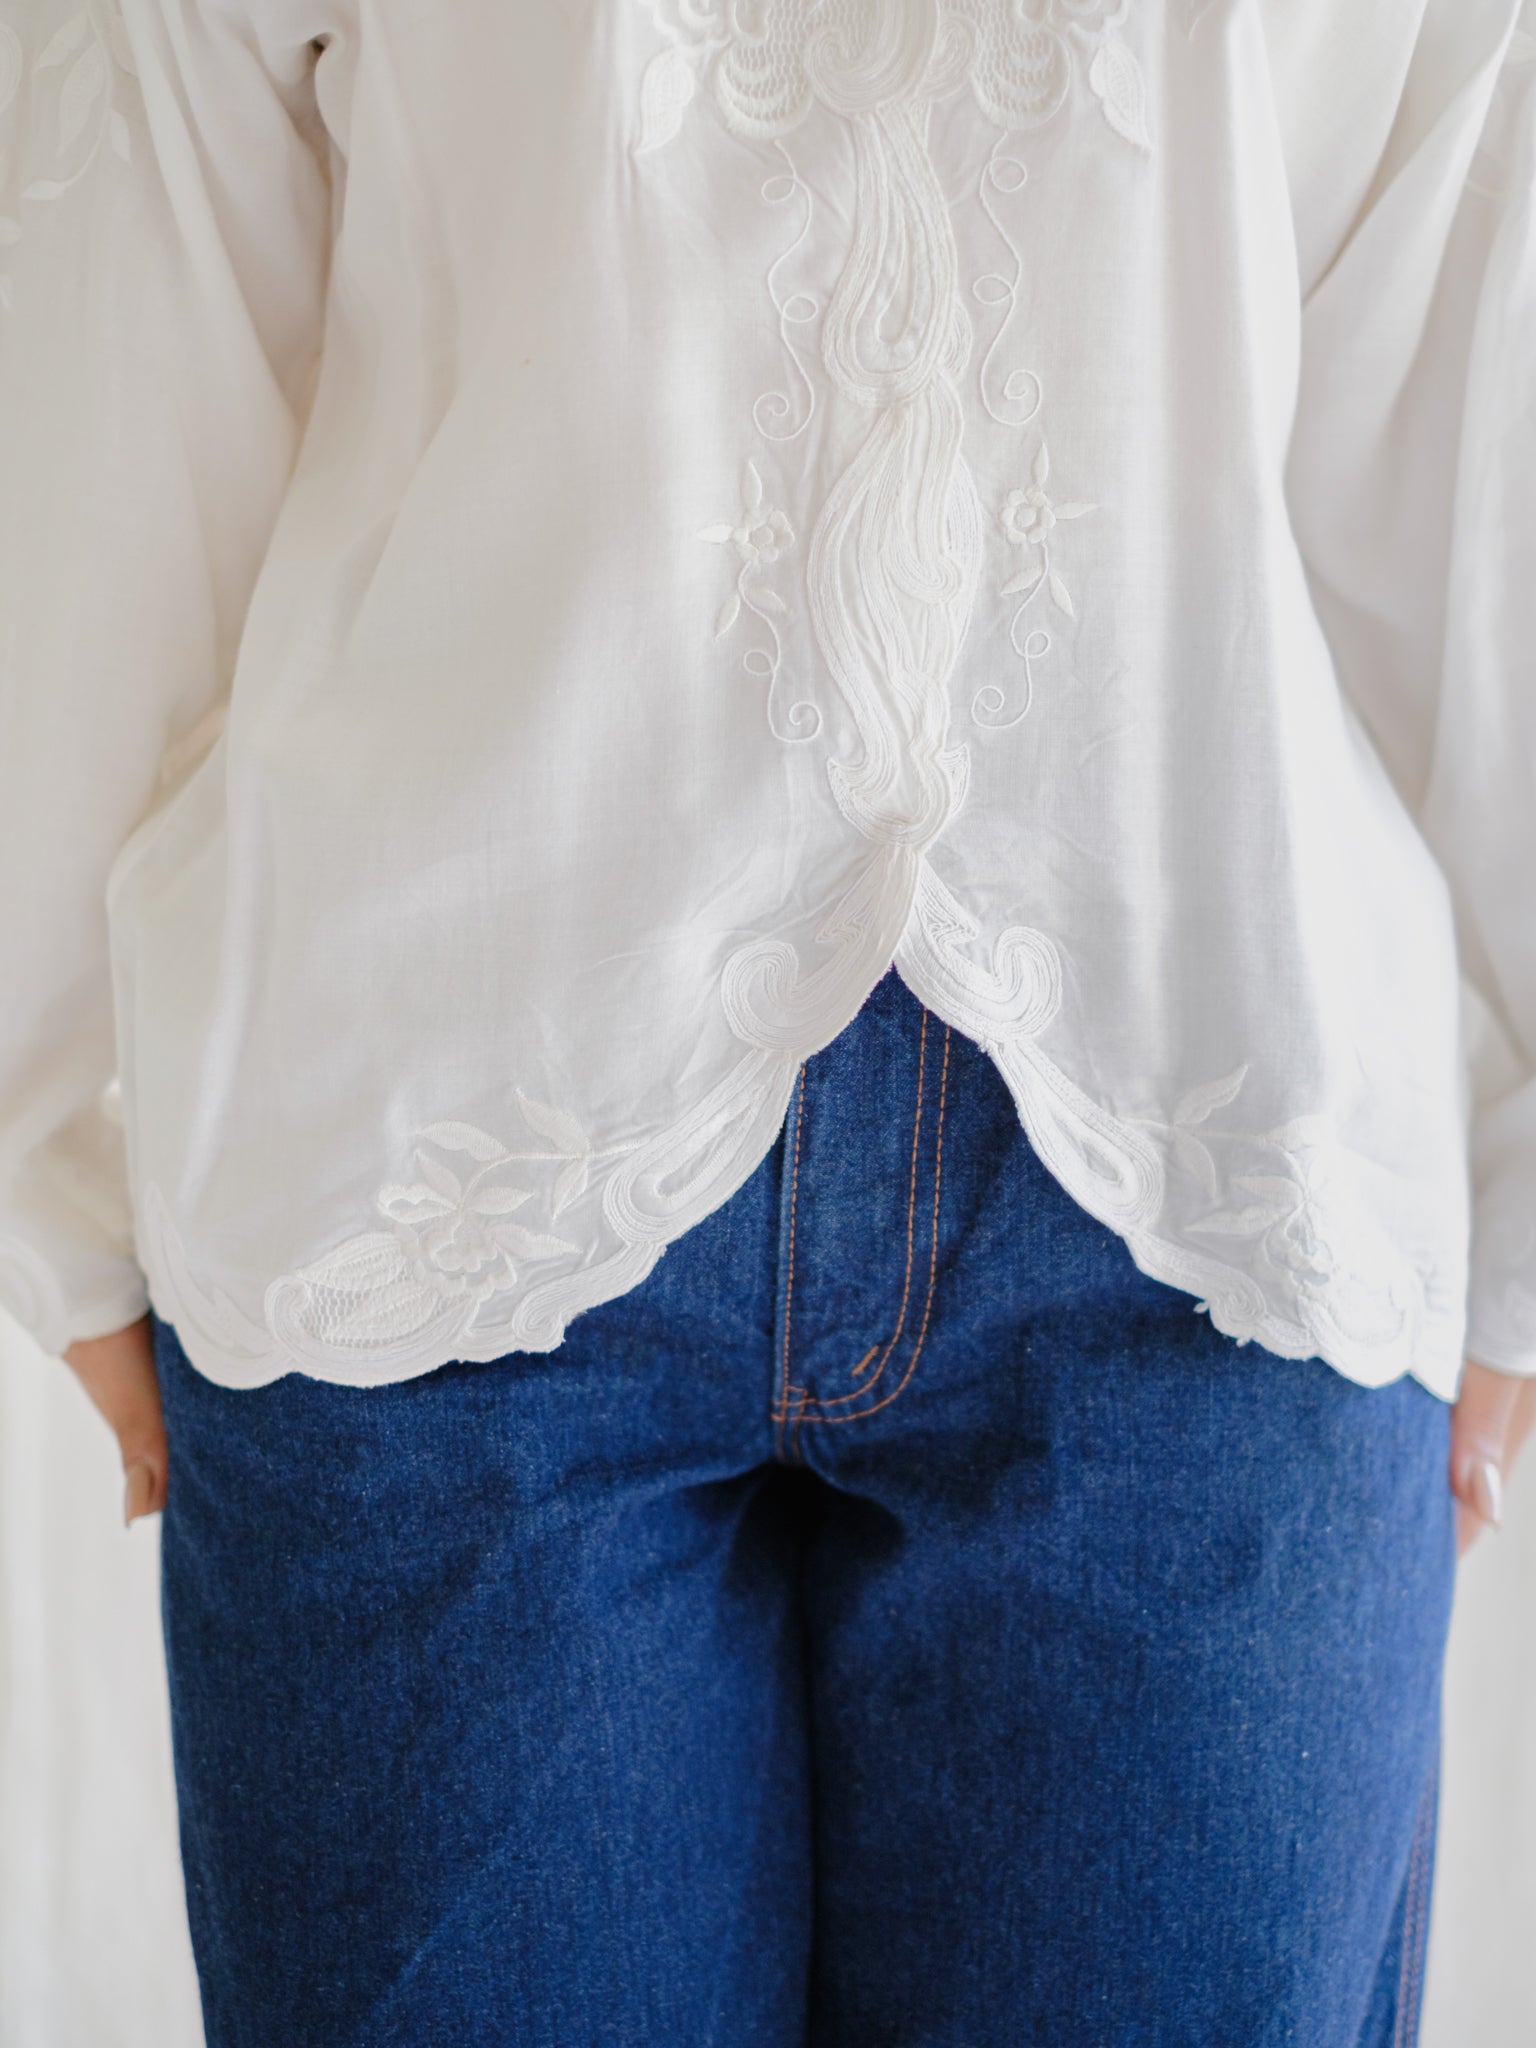 White lace vintage blouse